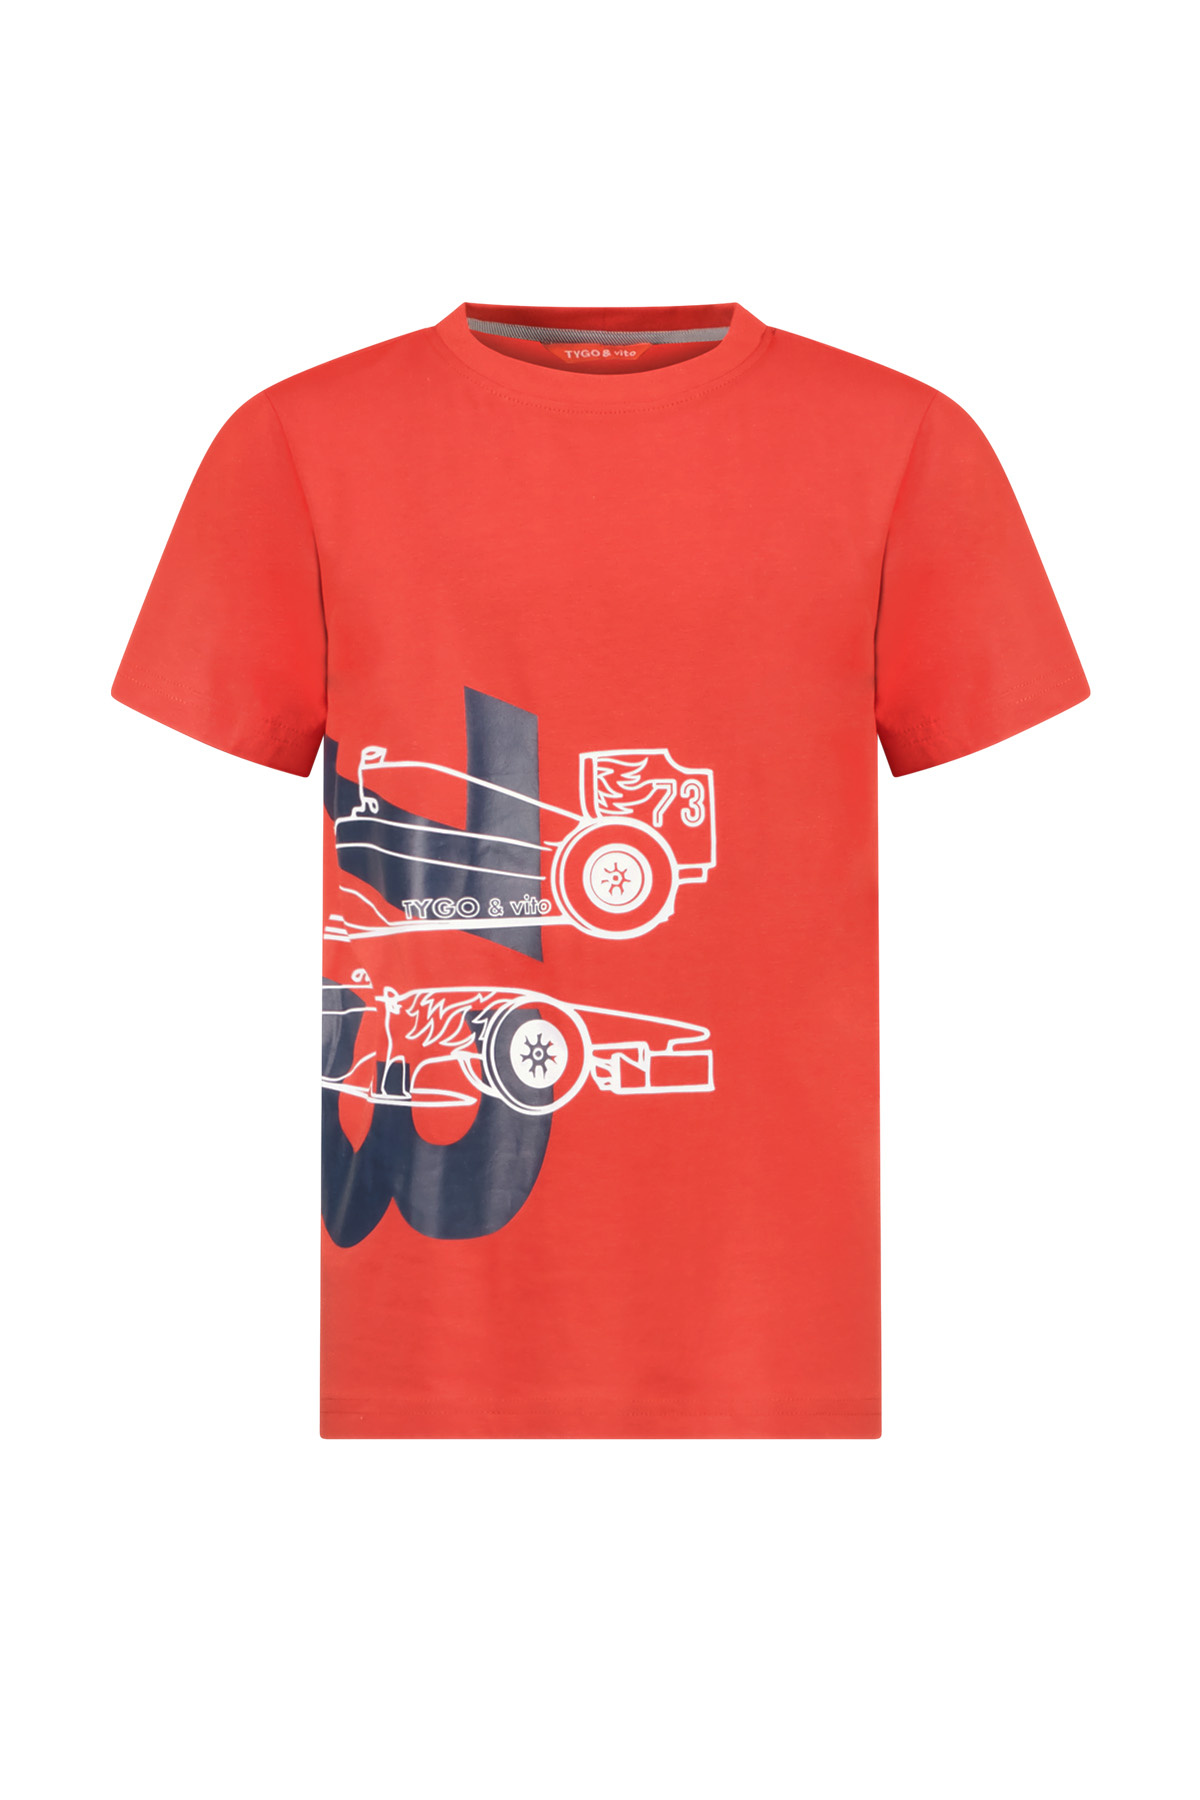 TYGO & vito X402-6427 Jongens T-shirt - Red - Maat 146-152